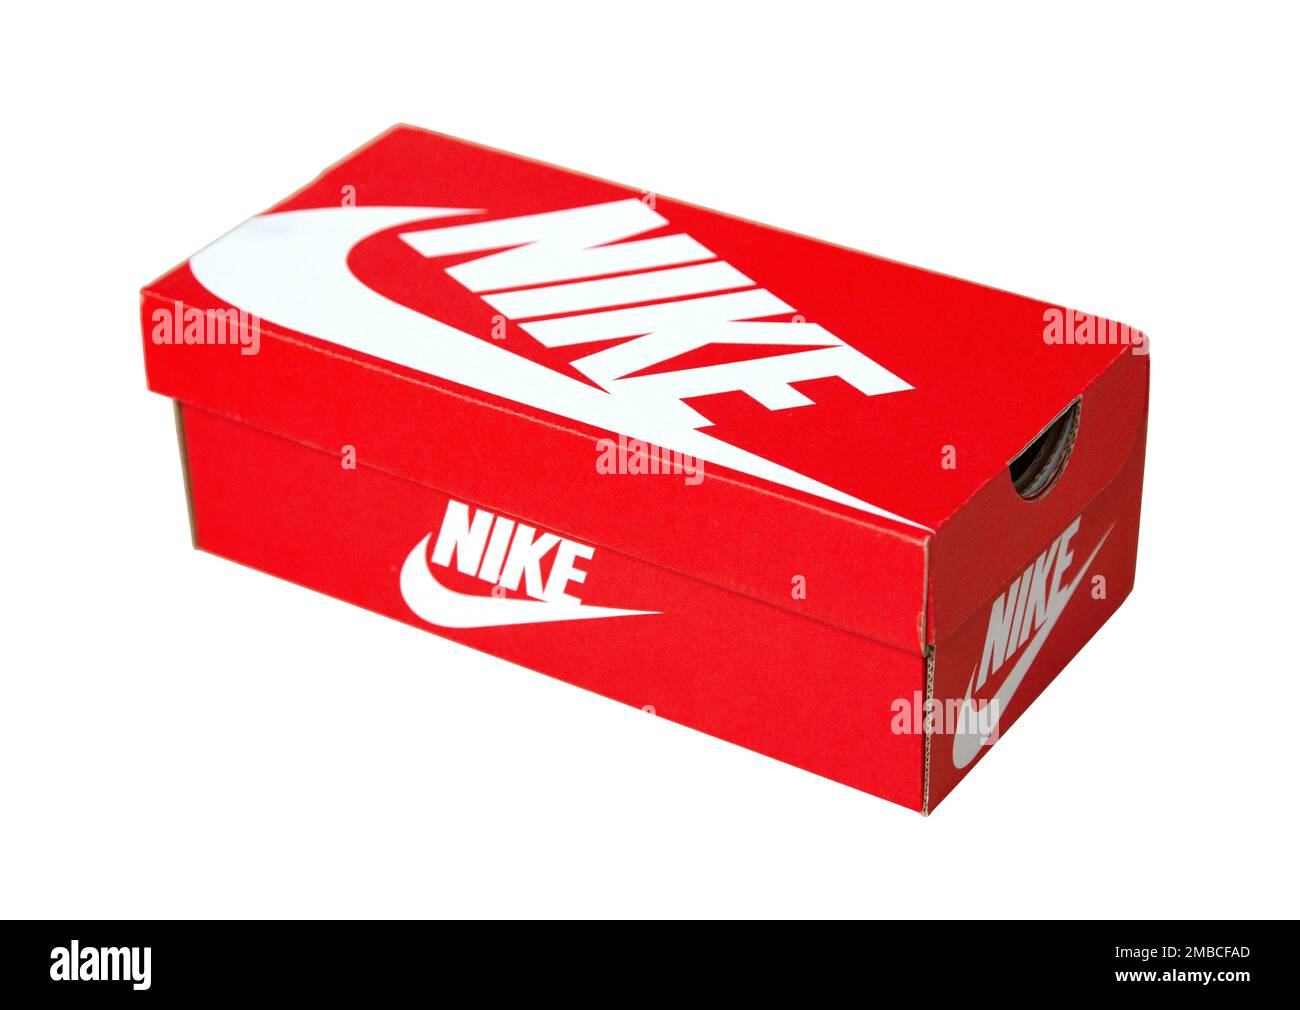 Chisinau, Moldau 26. Juni 2018: Nike Schuhbox isoliert auf weißem  Hintergrund. Nike ist einer der weltweit größten Hersteller von  Sportschuhen Stockfotografie - Alamy